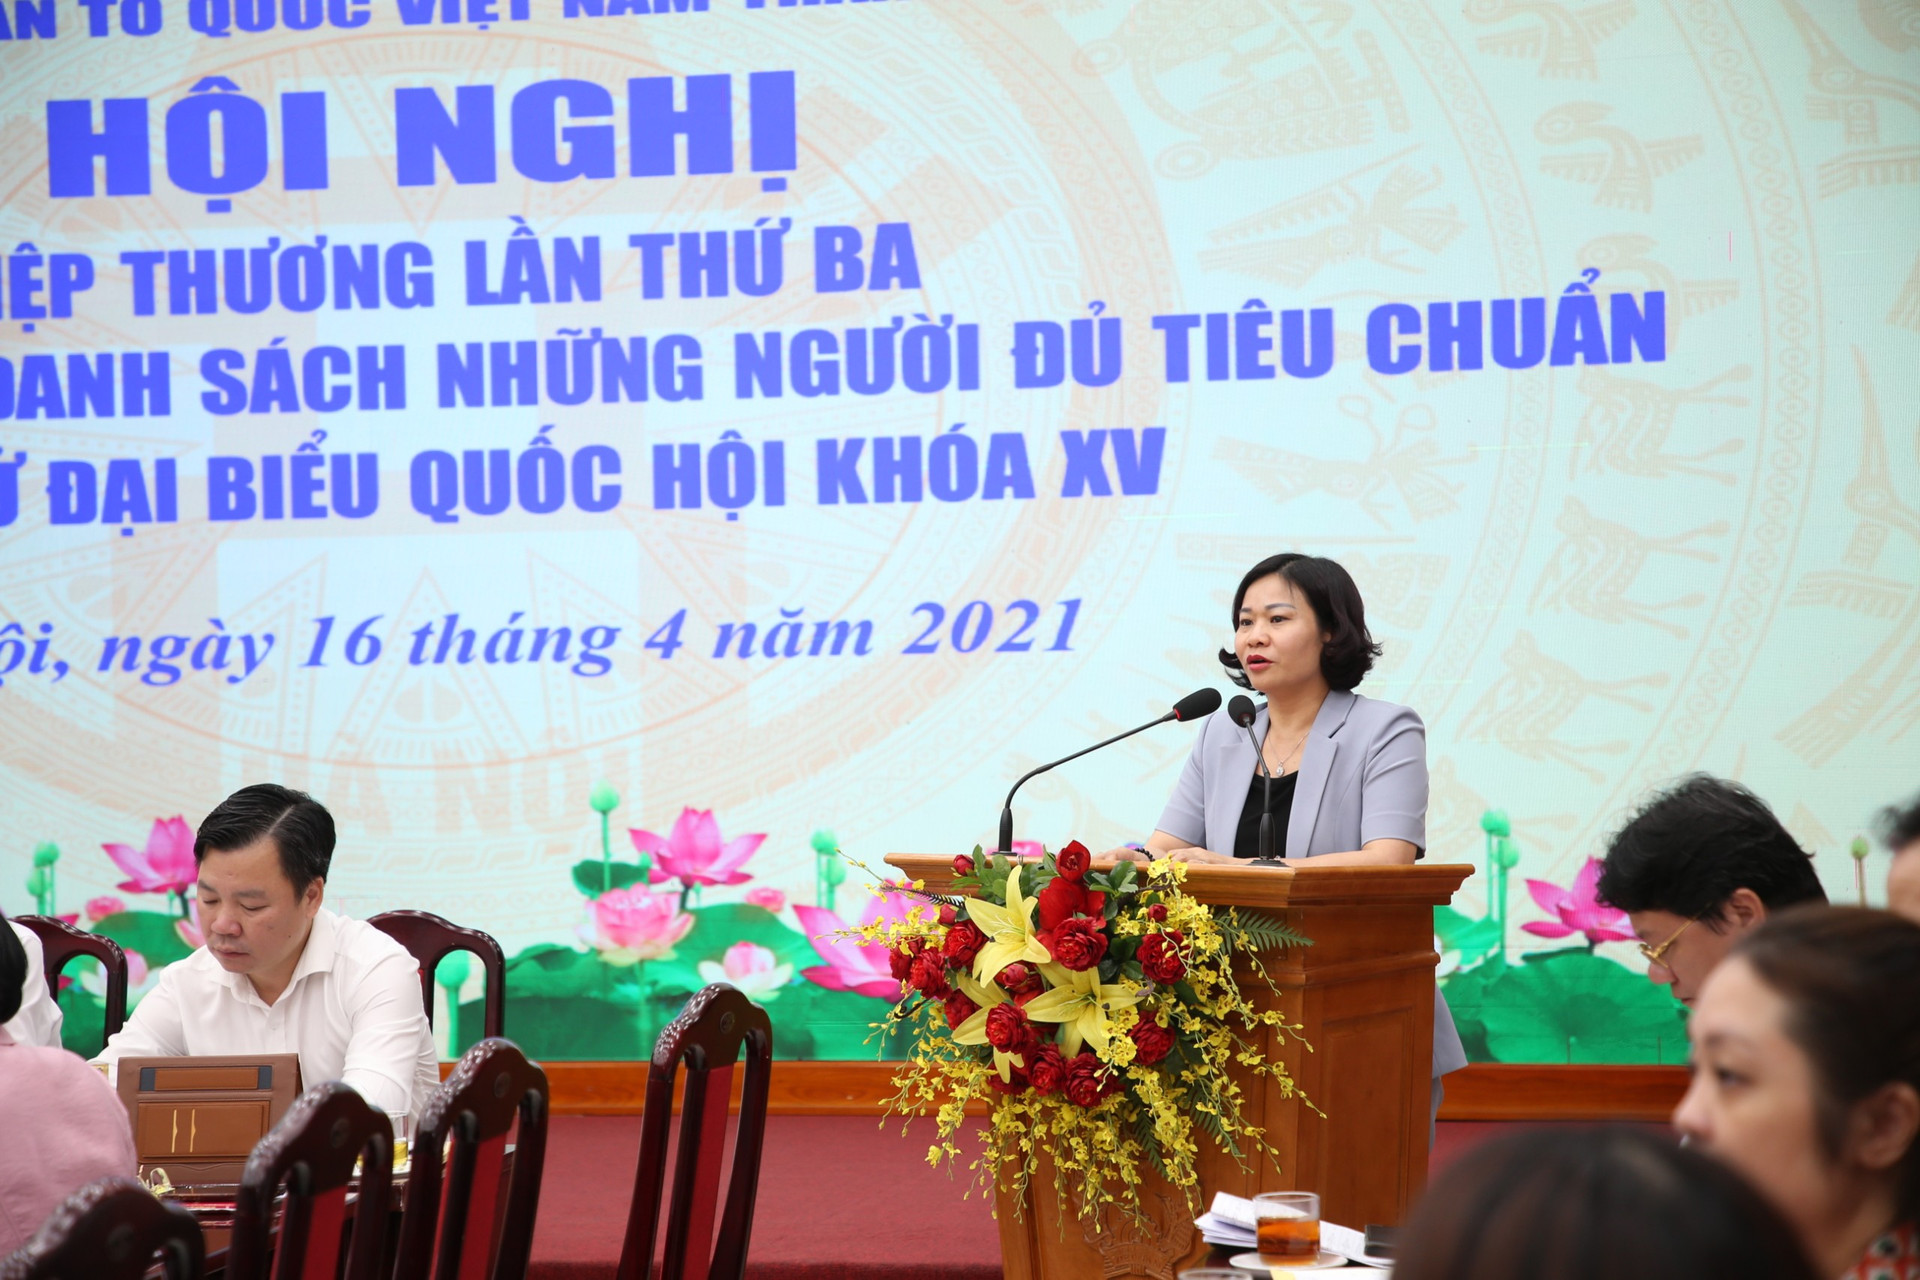 Bà Nguyễn Thị Tuyến, Ủy viên Trung ương Đảng, Phó Bí thư Thường trực Thành ủy phát biểu tại hội nghị.